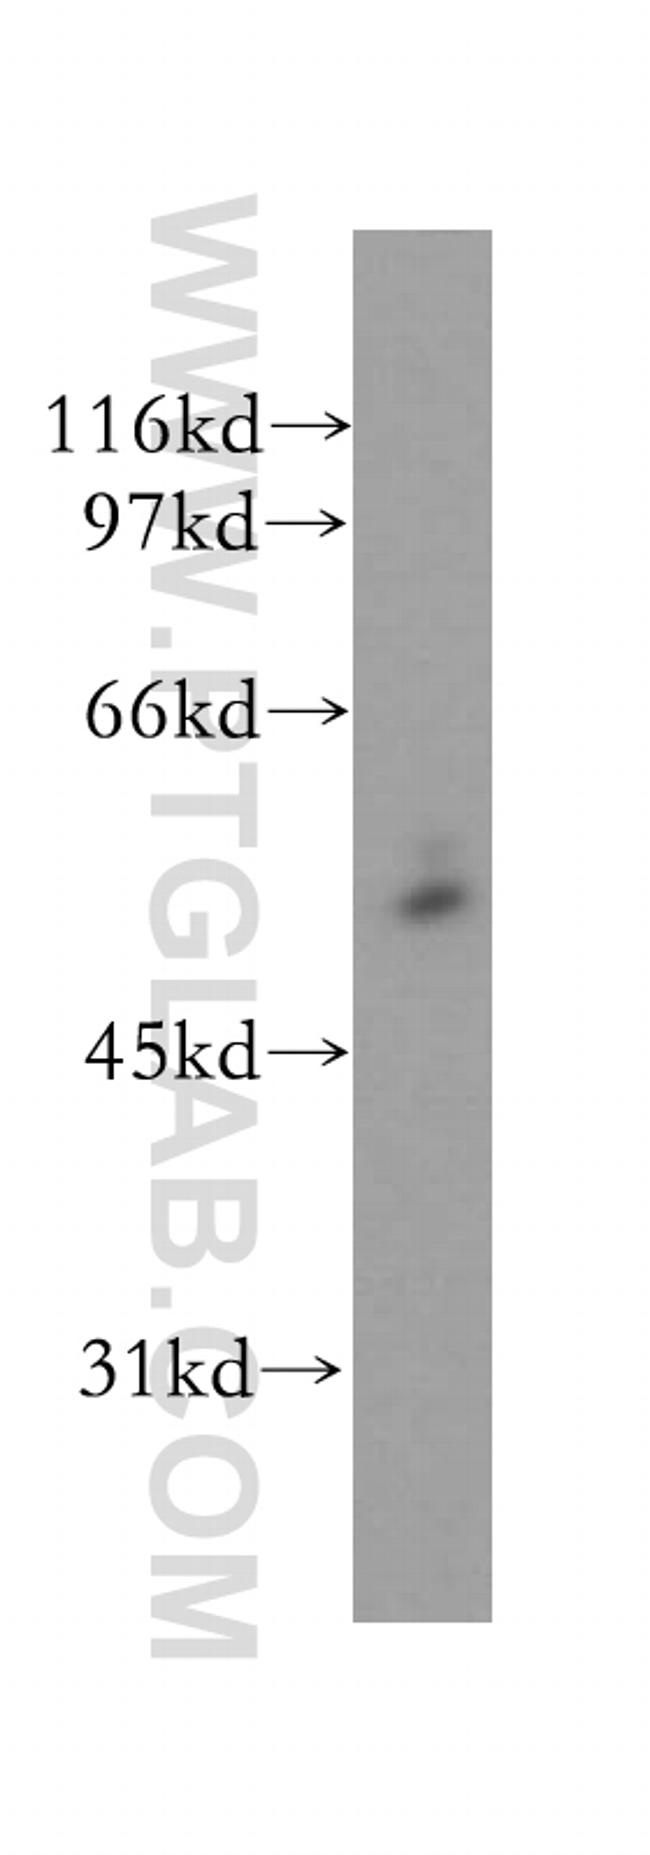 CYP51A1 Antibody in Western Blot (WB)